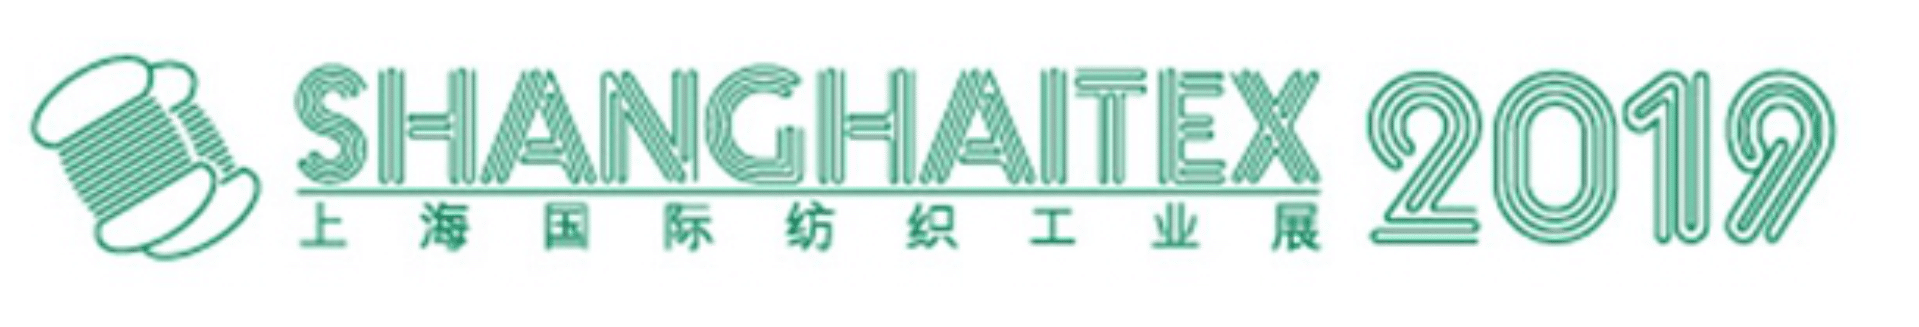 shanghaitex_kma_2019